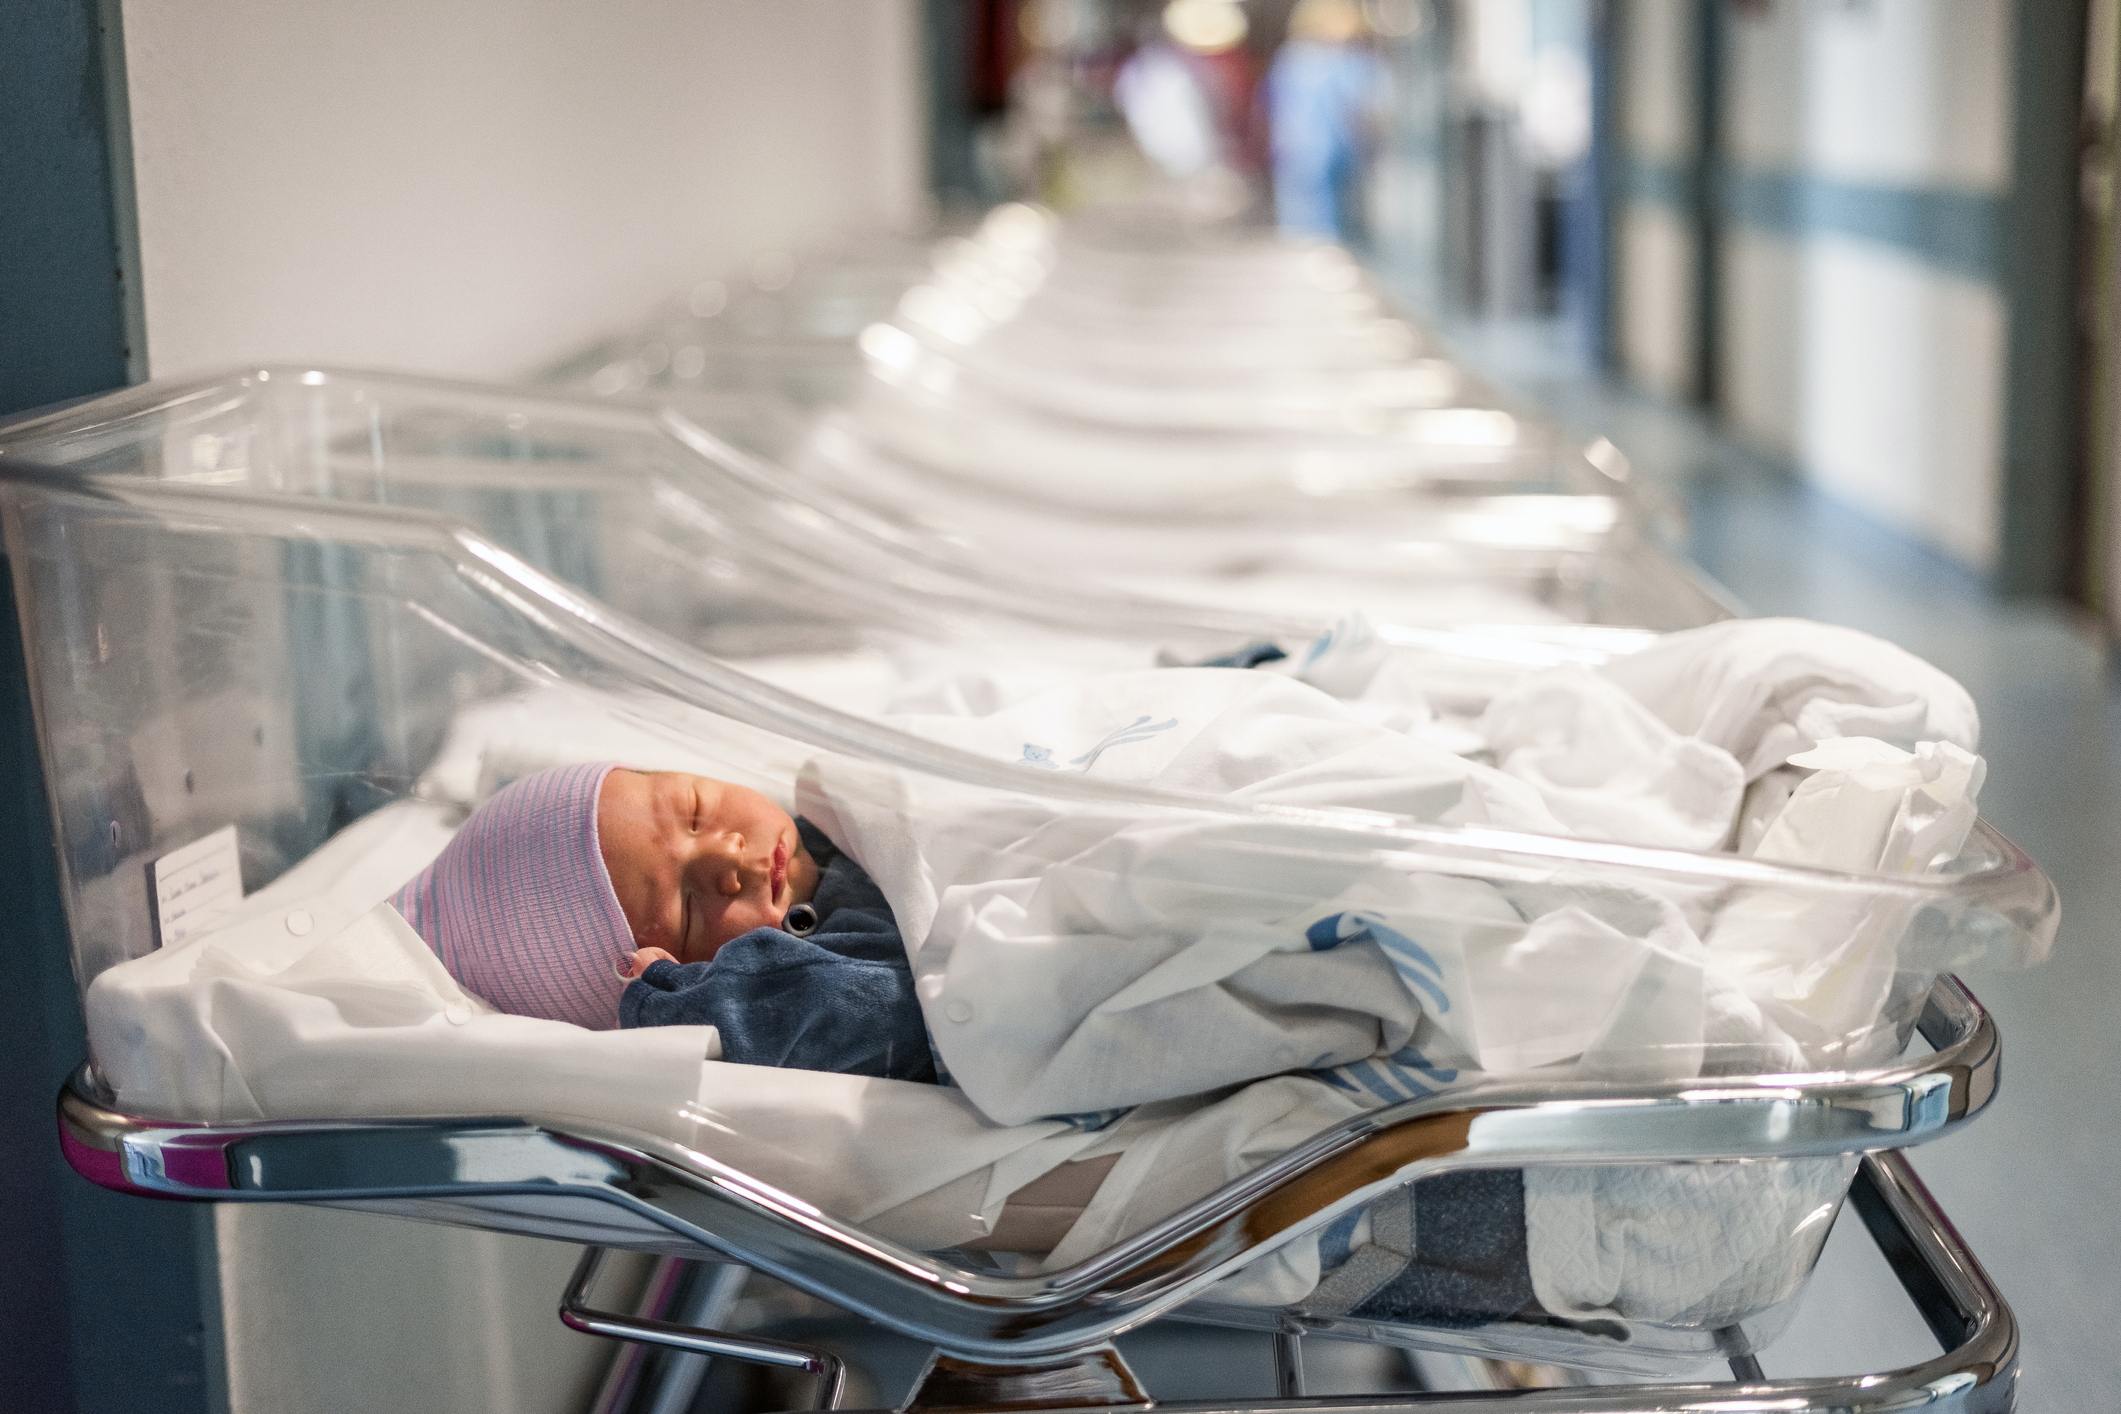 Hemşire İtiraf Etti: Yeni Doğmuş 5 Bin Bebeğin Yerini Değiştirdim 